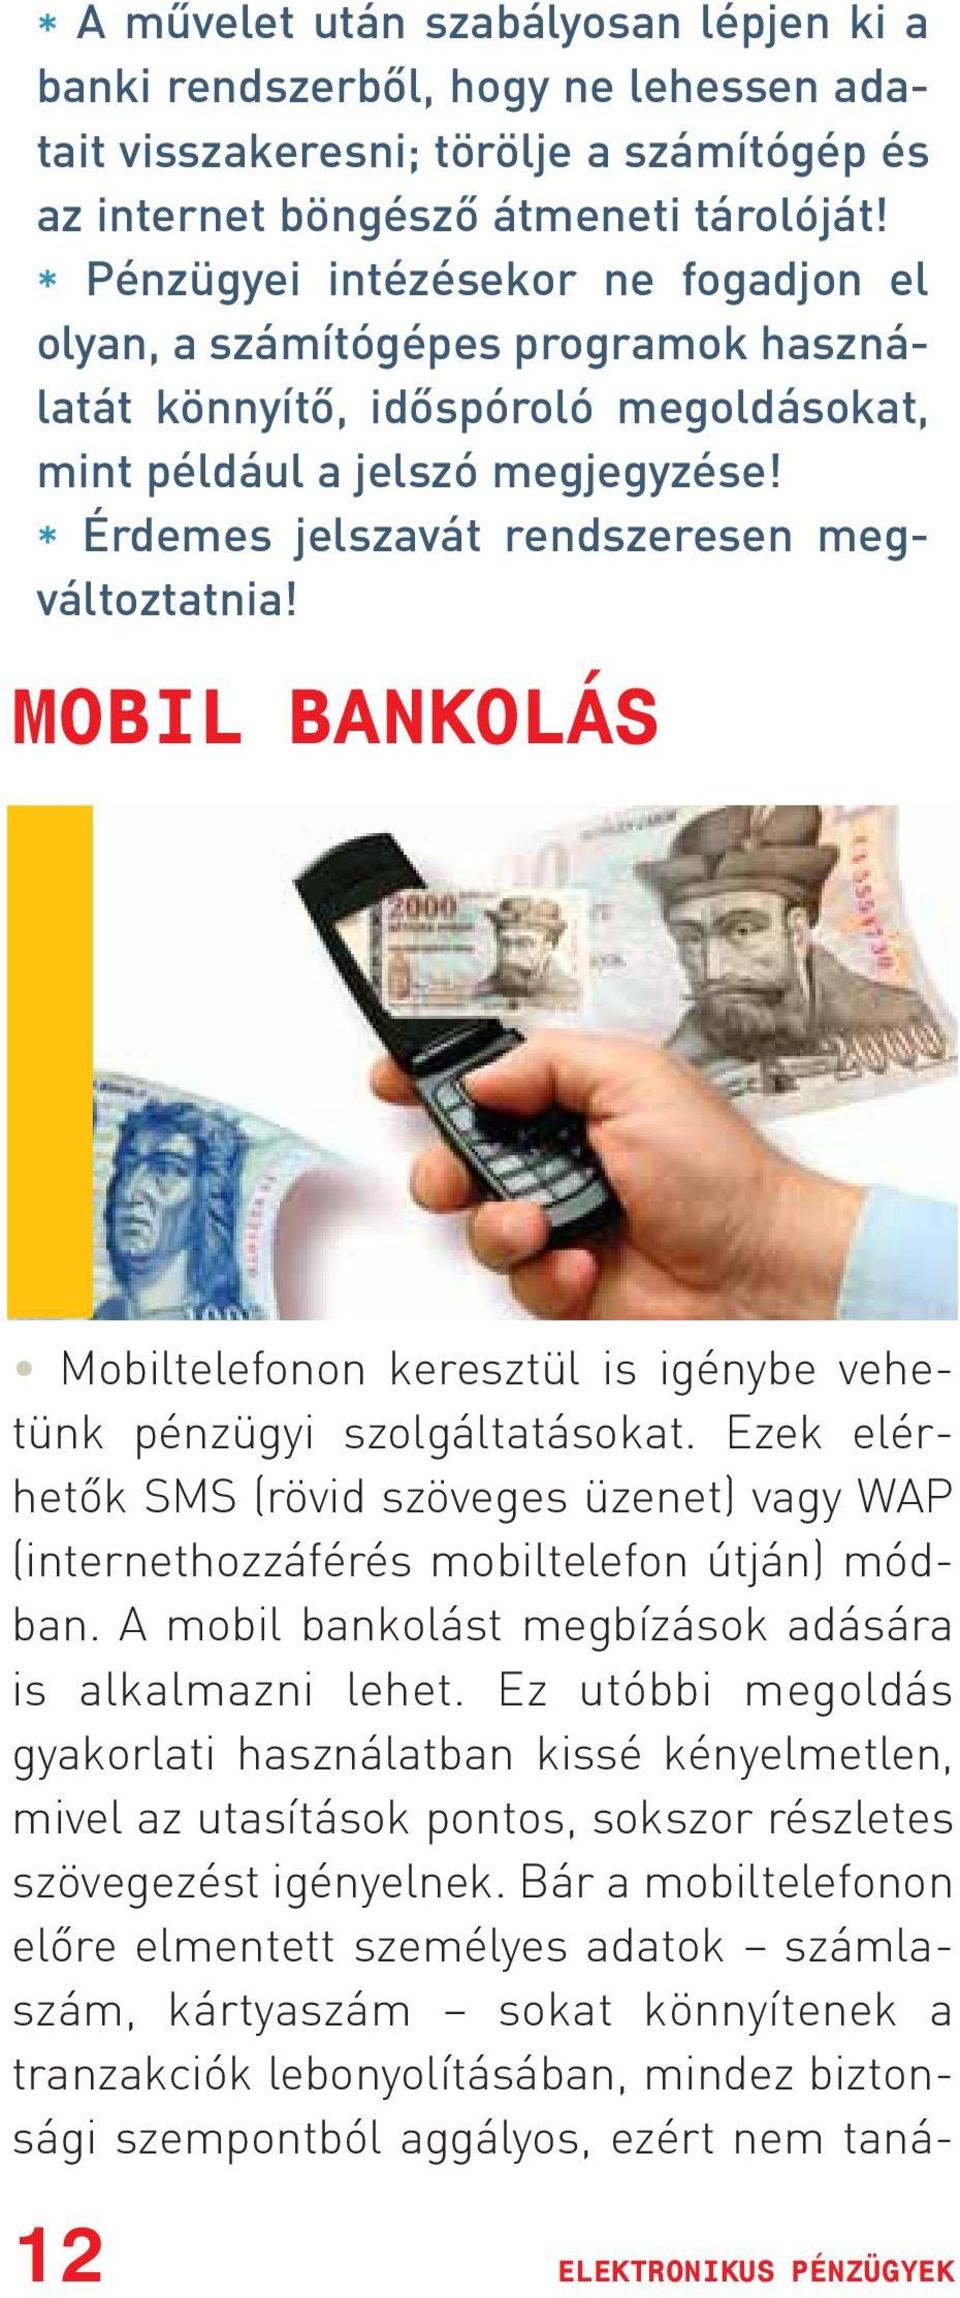 * Érdemes jelszavát rendszeresen megváltoztatnia! MOBIL BANKOLÁS Mobiltelefonon keresztül is igénybe vehetünk pénzügyi szolgáltatásokat.